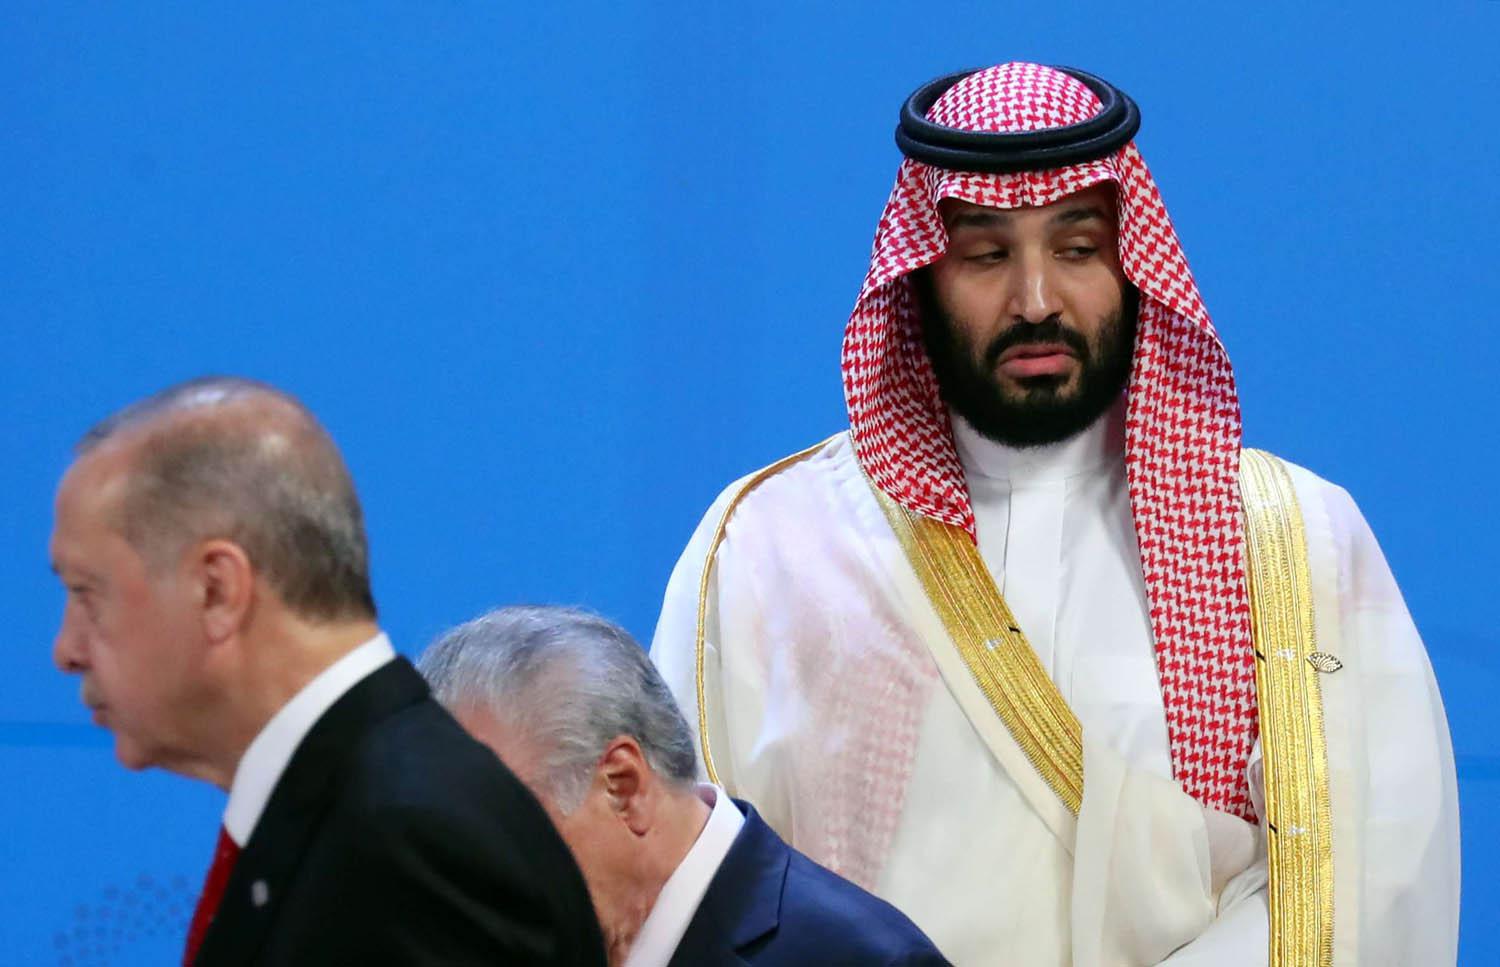 ولي العهد السعودي الأمير محمد بن سلمان يشيح ببصره عن الرئيس التركي رجب طيب أردوغان